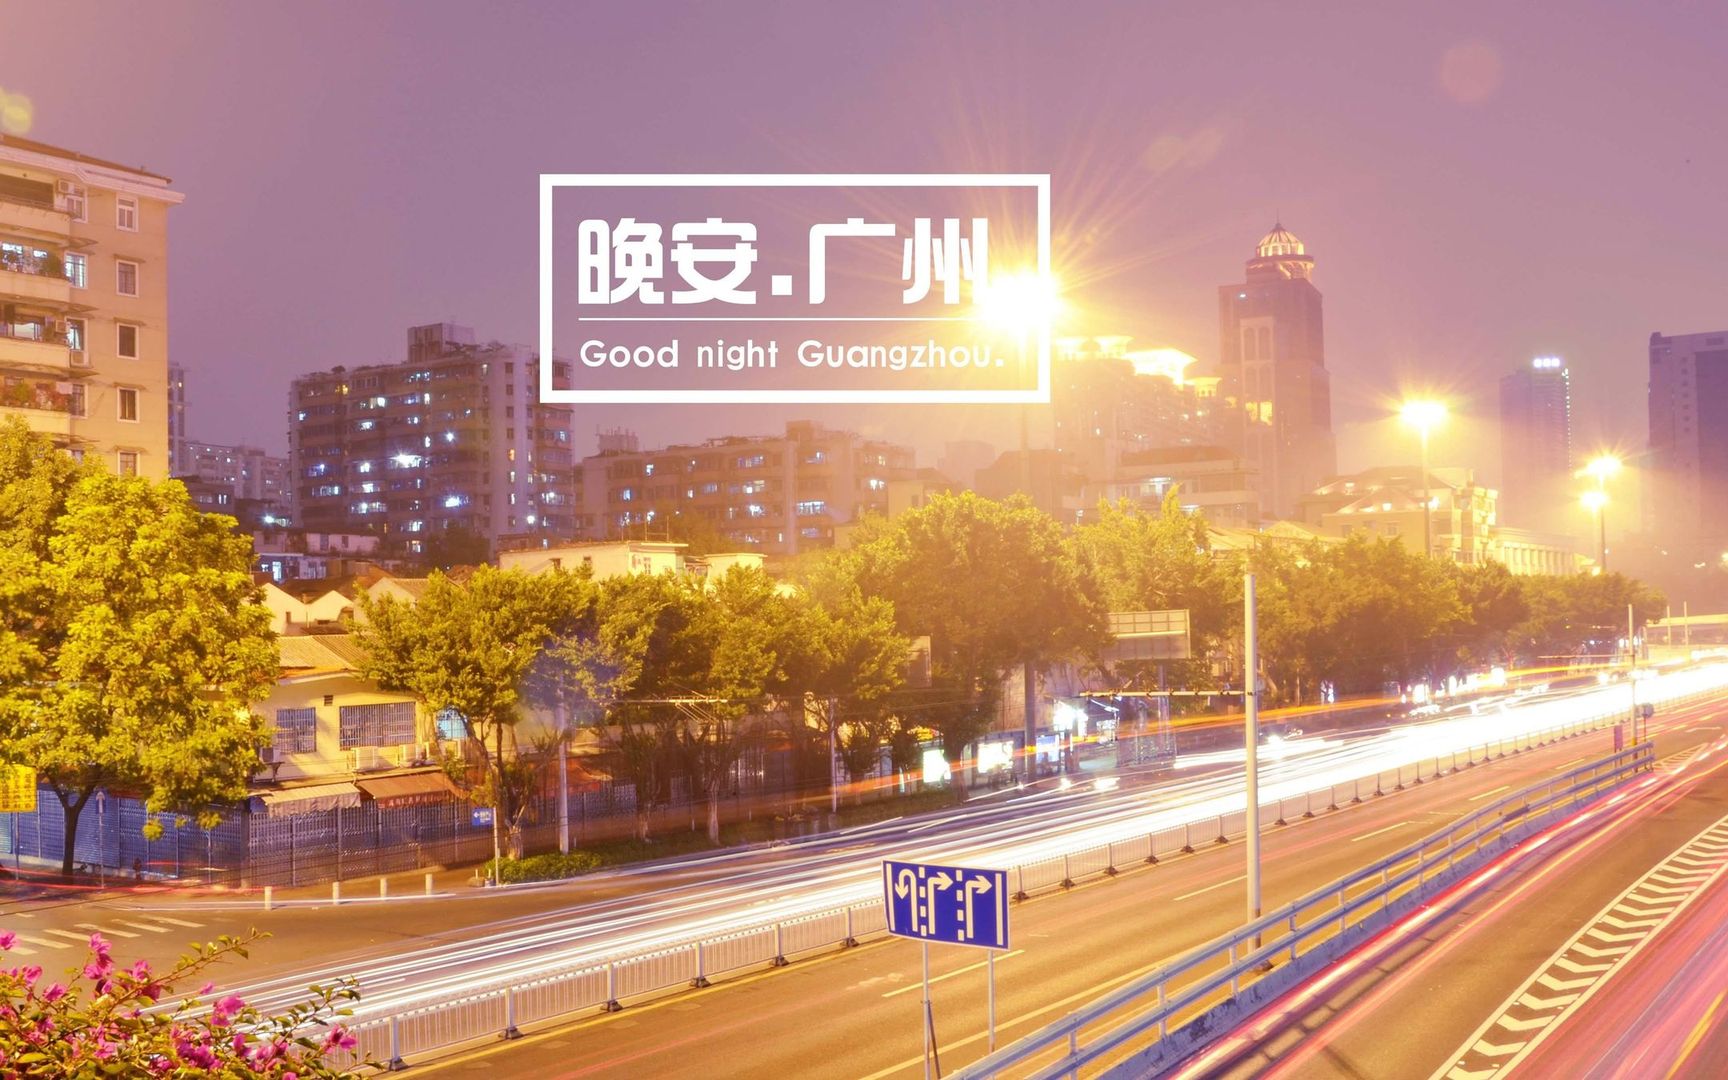 夜色笼罩下的广州街道五光十色 晚安广州